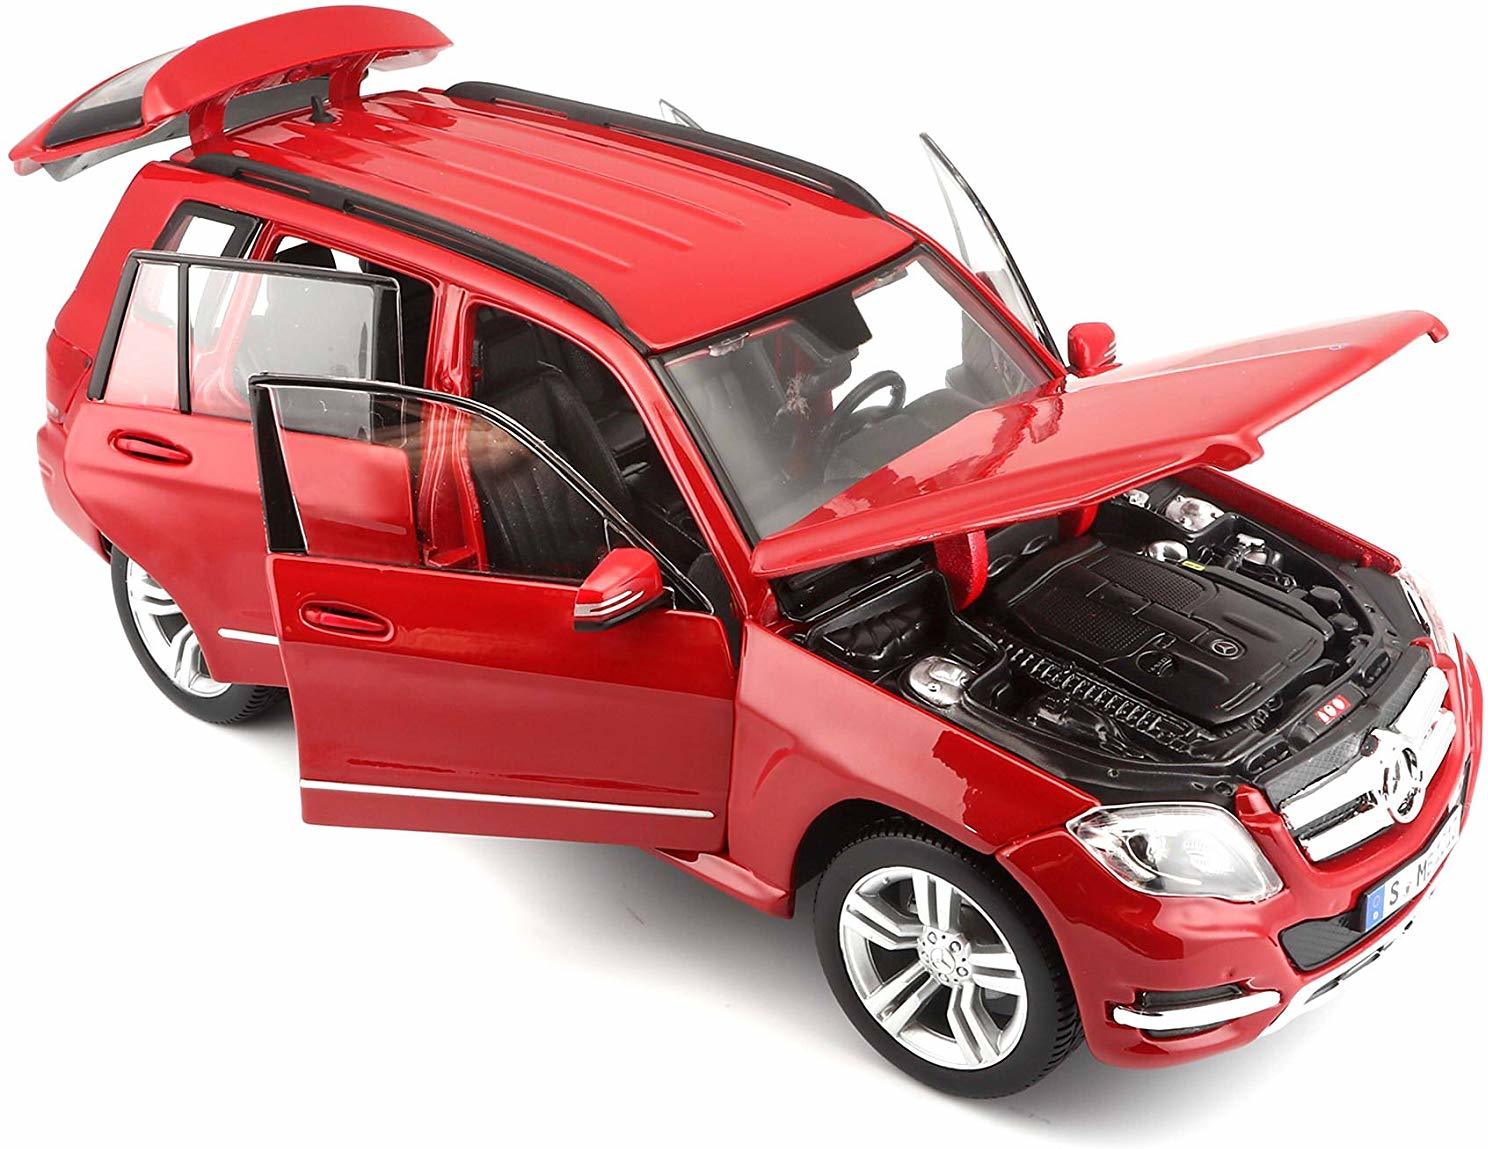 Mercedes GLK, Modellauto mit Federung, Maßstab 1:18, Türen und Motorhaube beweglich, Fertigmodell, lenkbar, 24 cm, rot